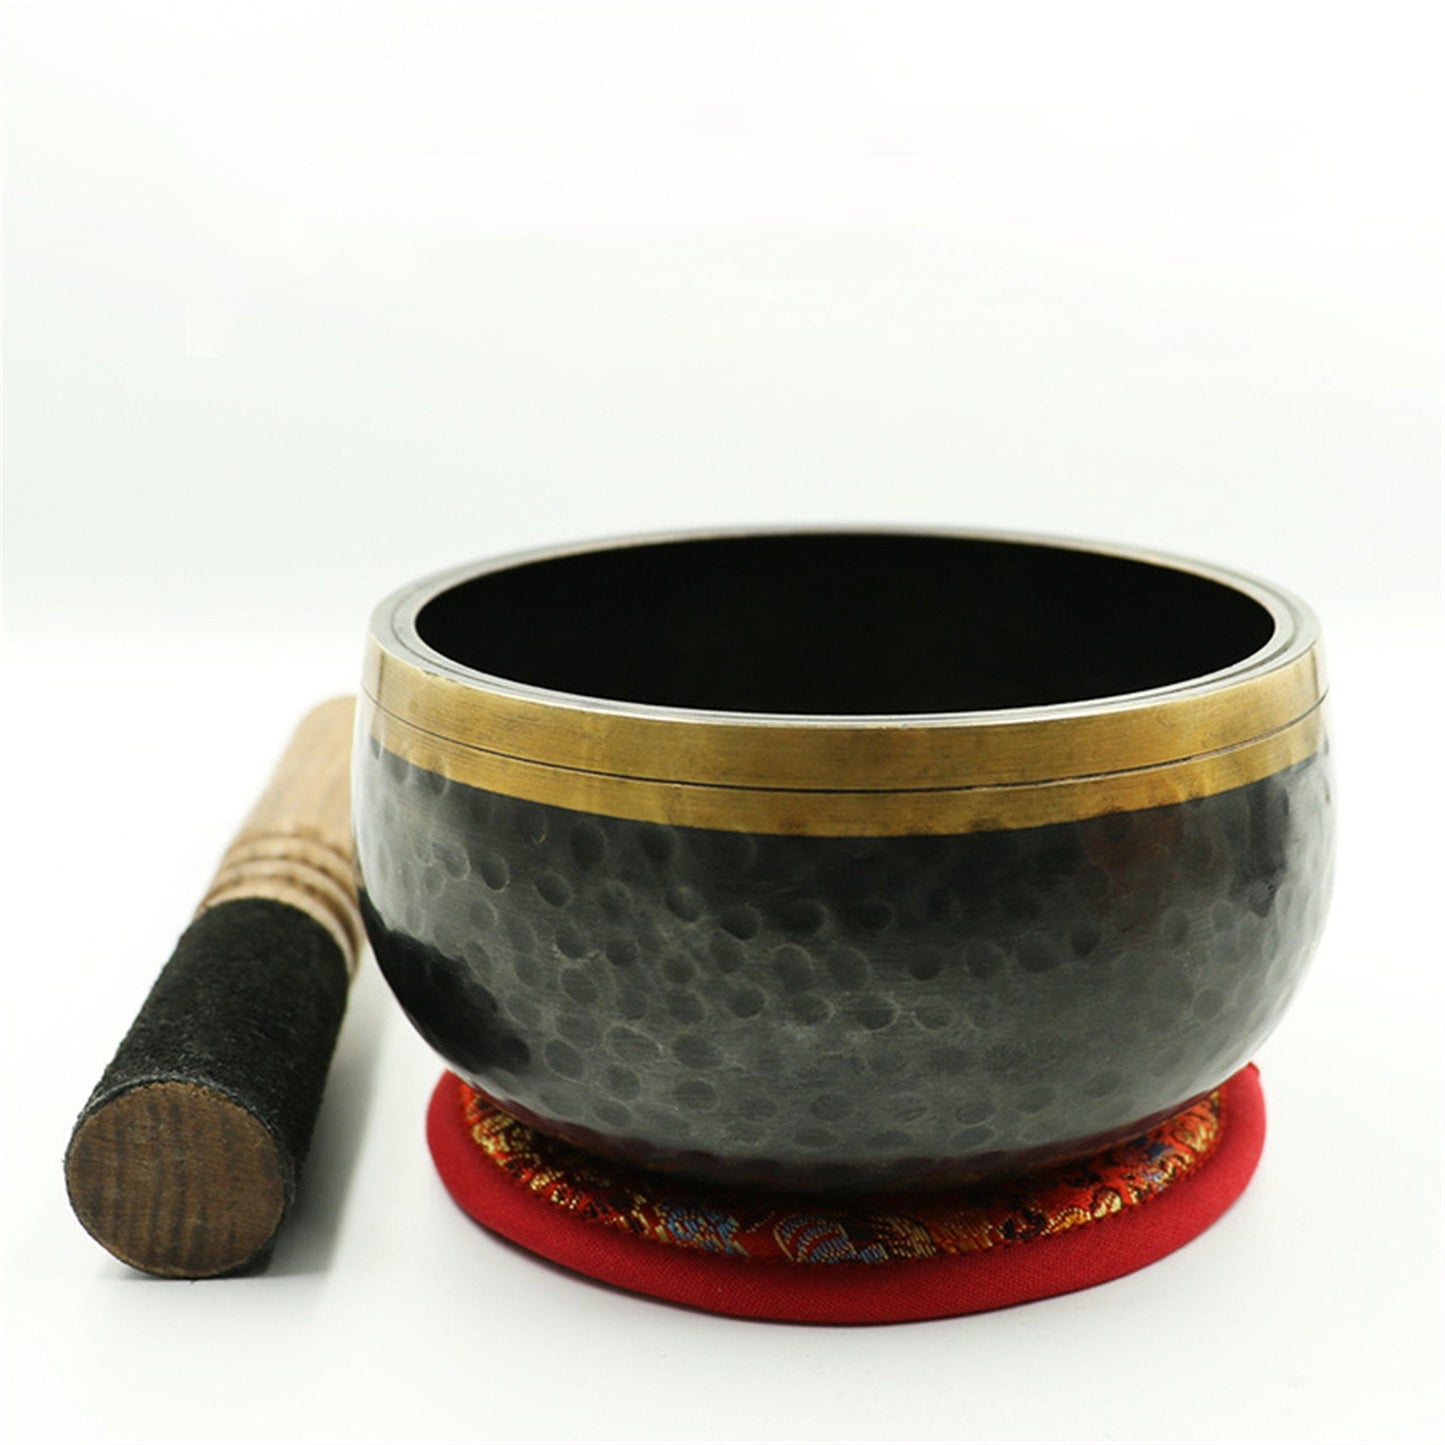 Gandhanra Black Tibetan Singing Bowl with Lingam Symbol